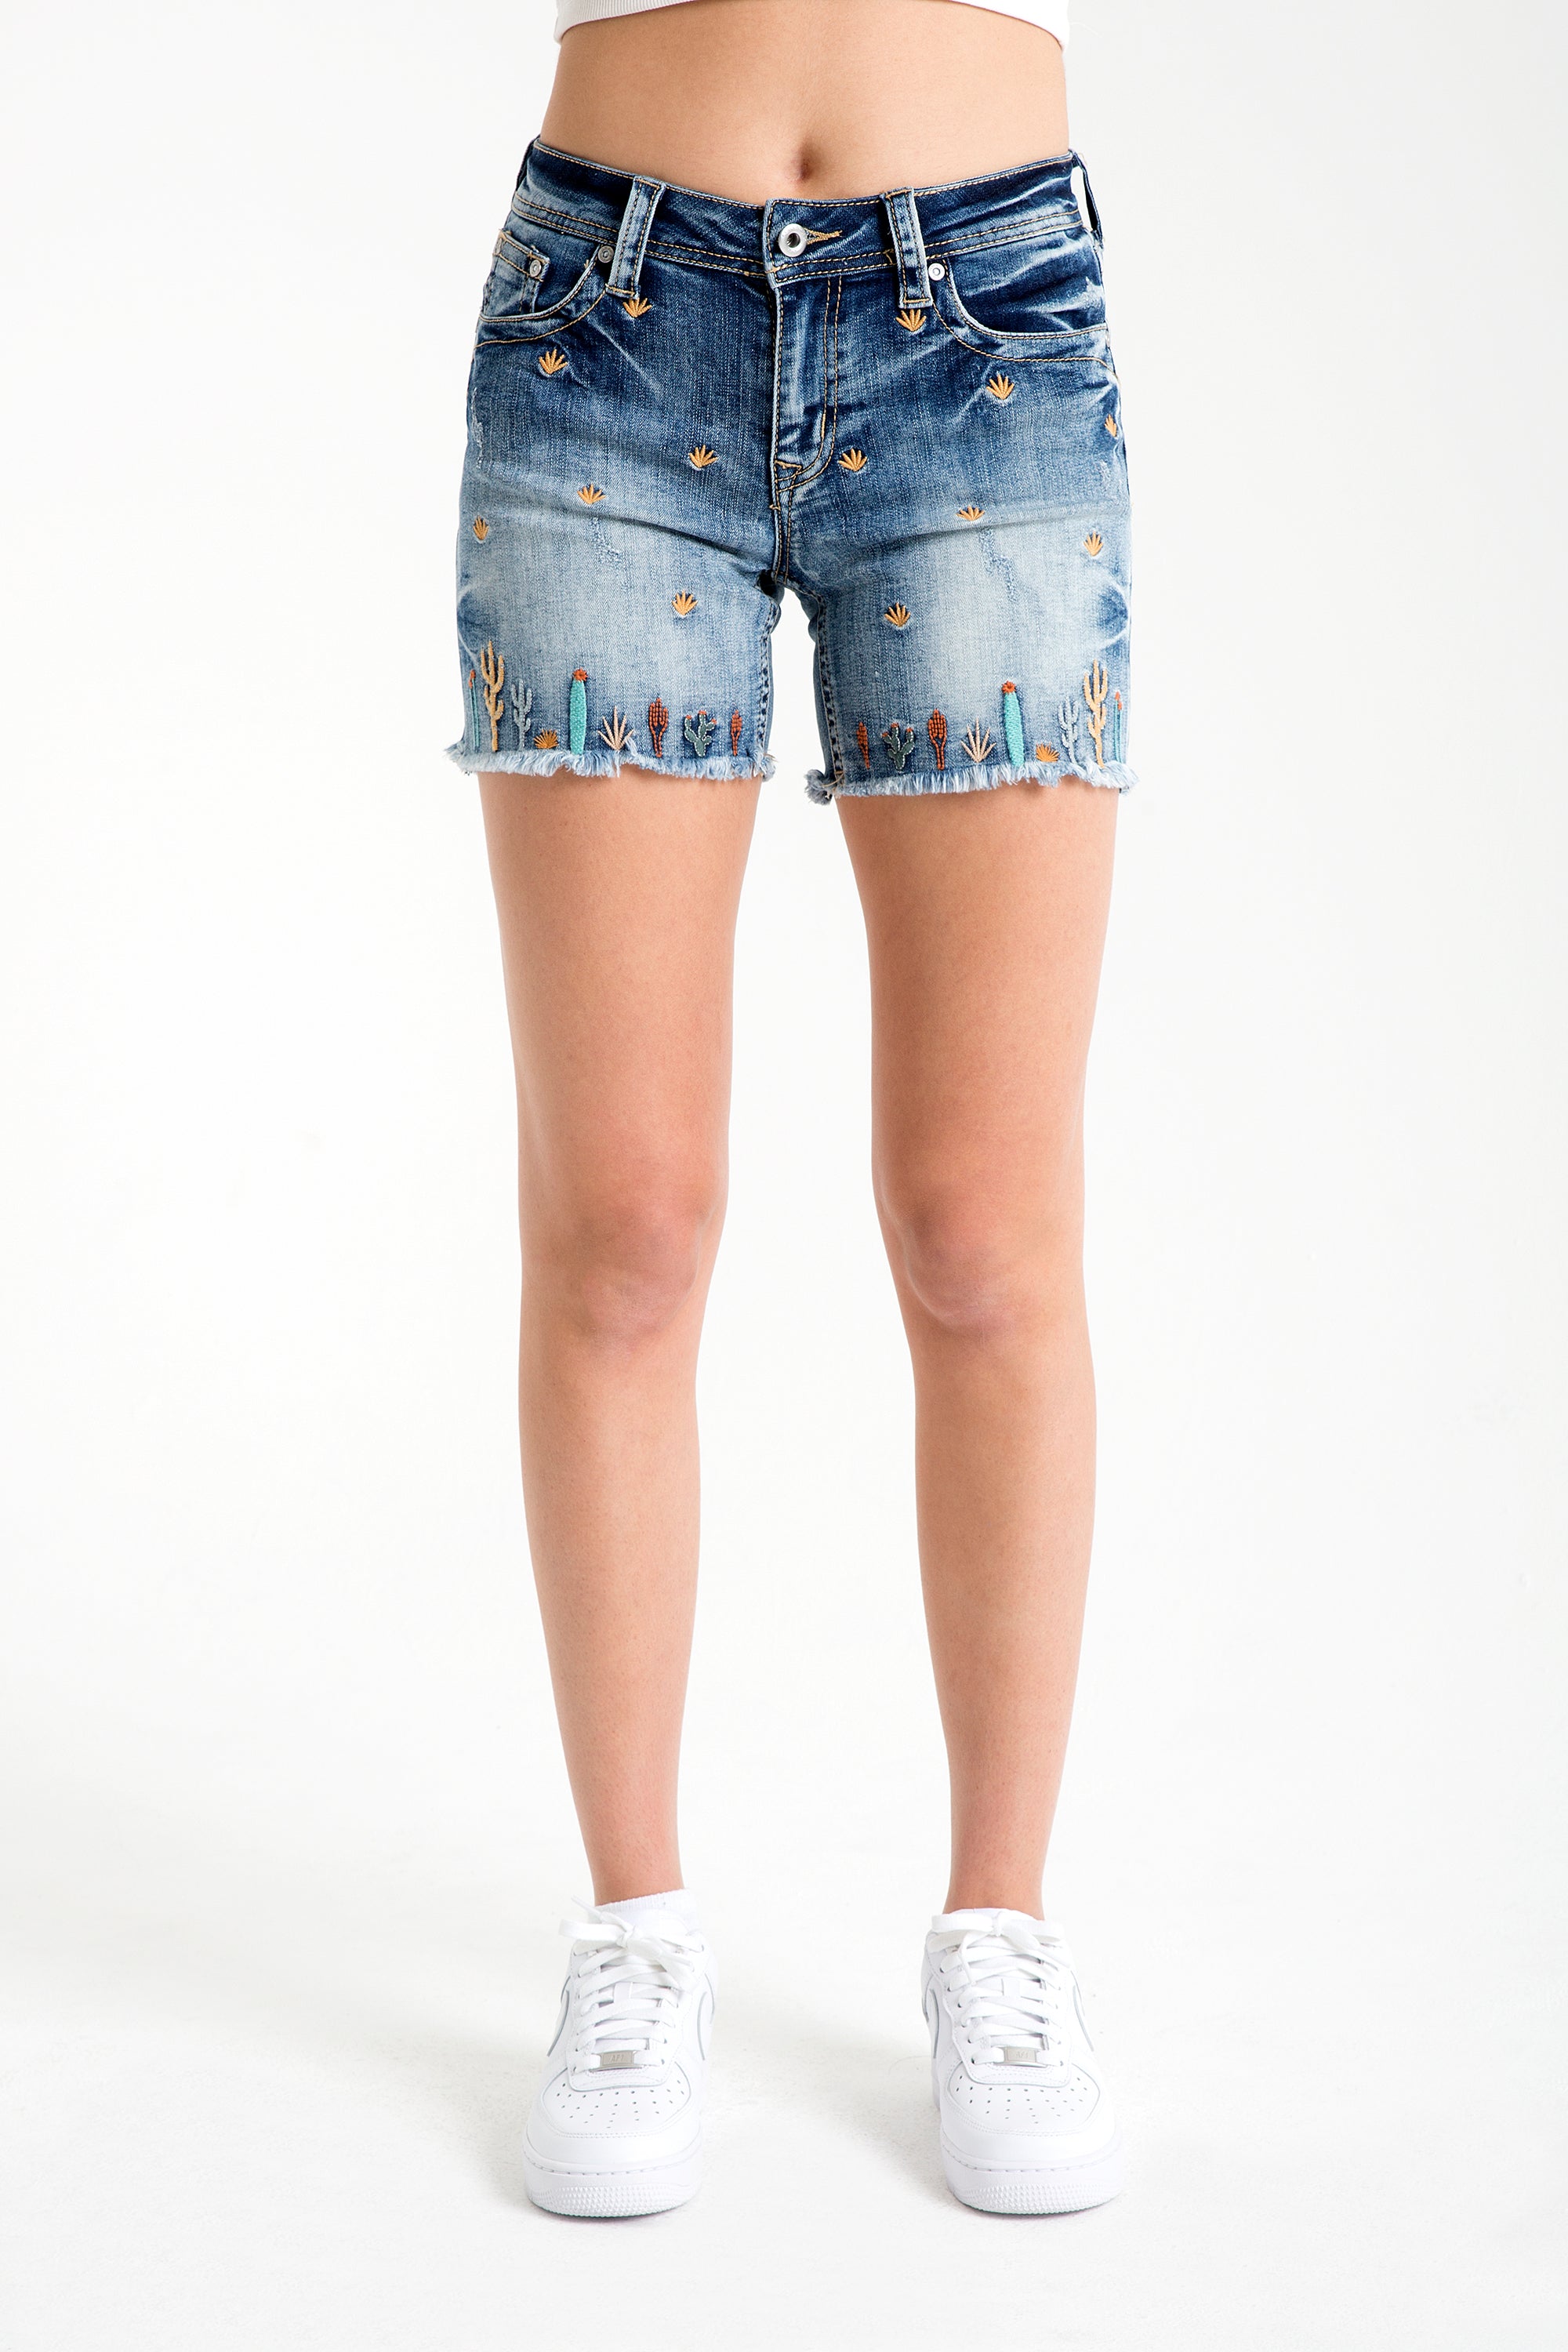 womens jean shorts - womens denim shorts - jean shorts for women - grace in la jean shorts